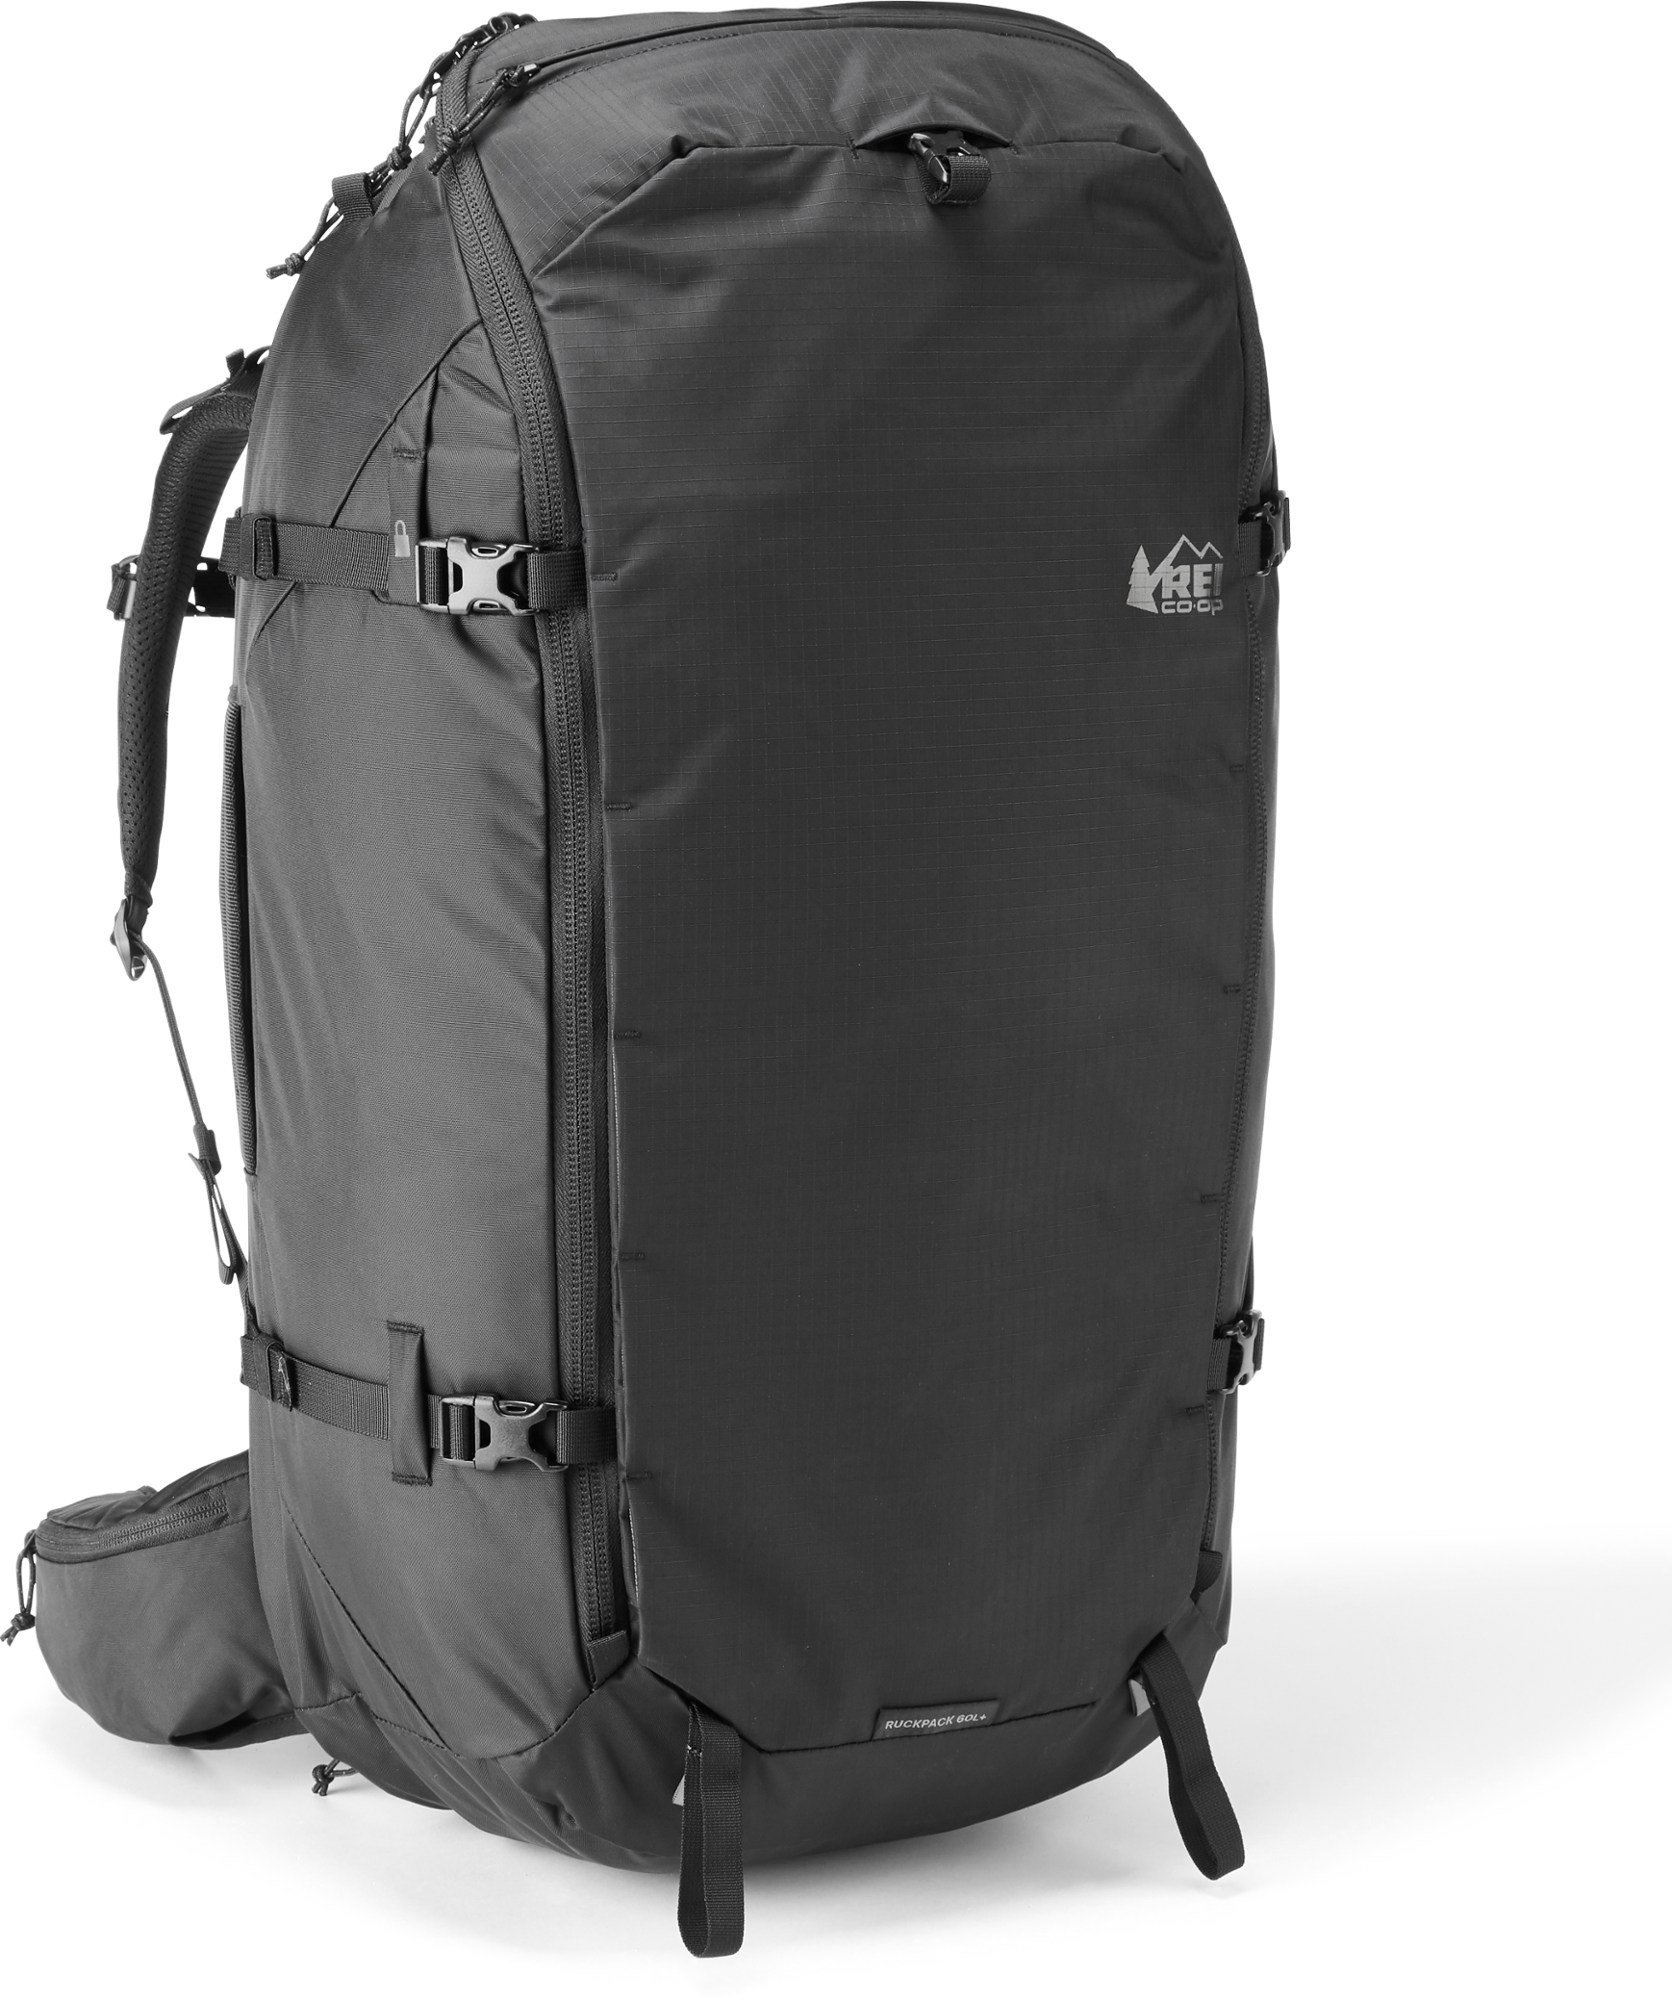 best backpack for travel female